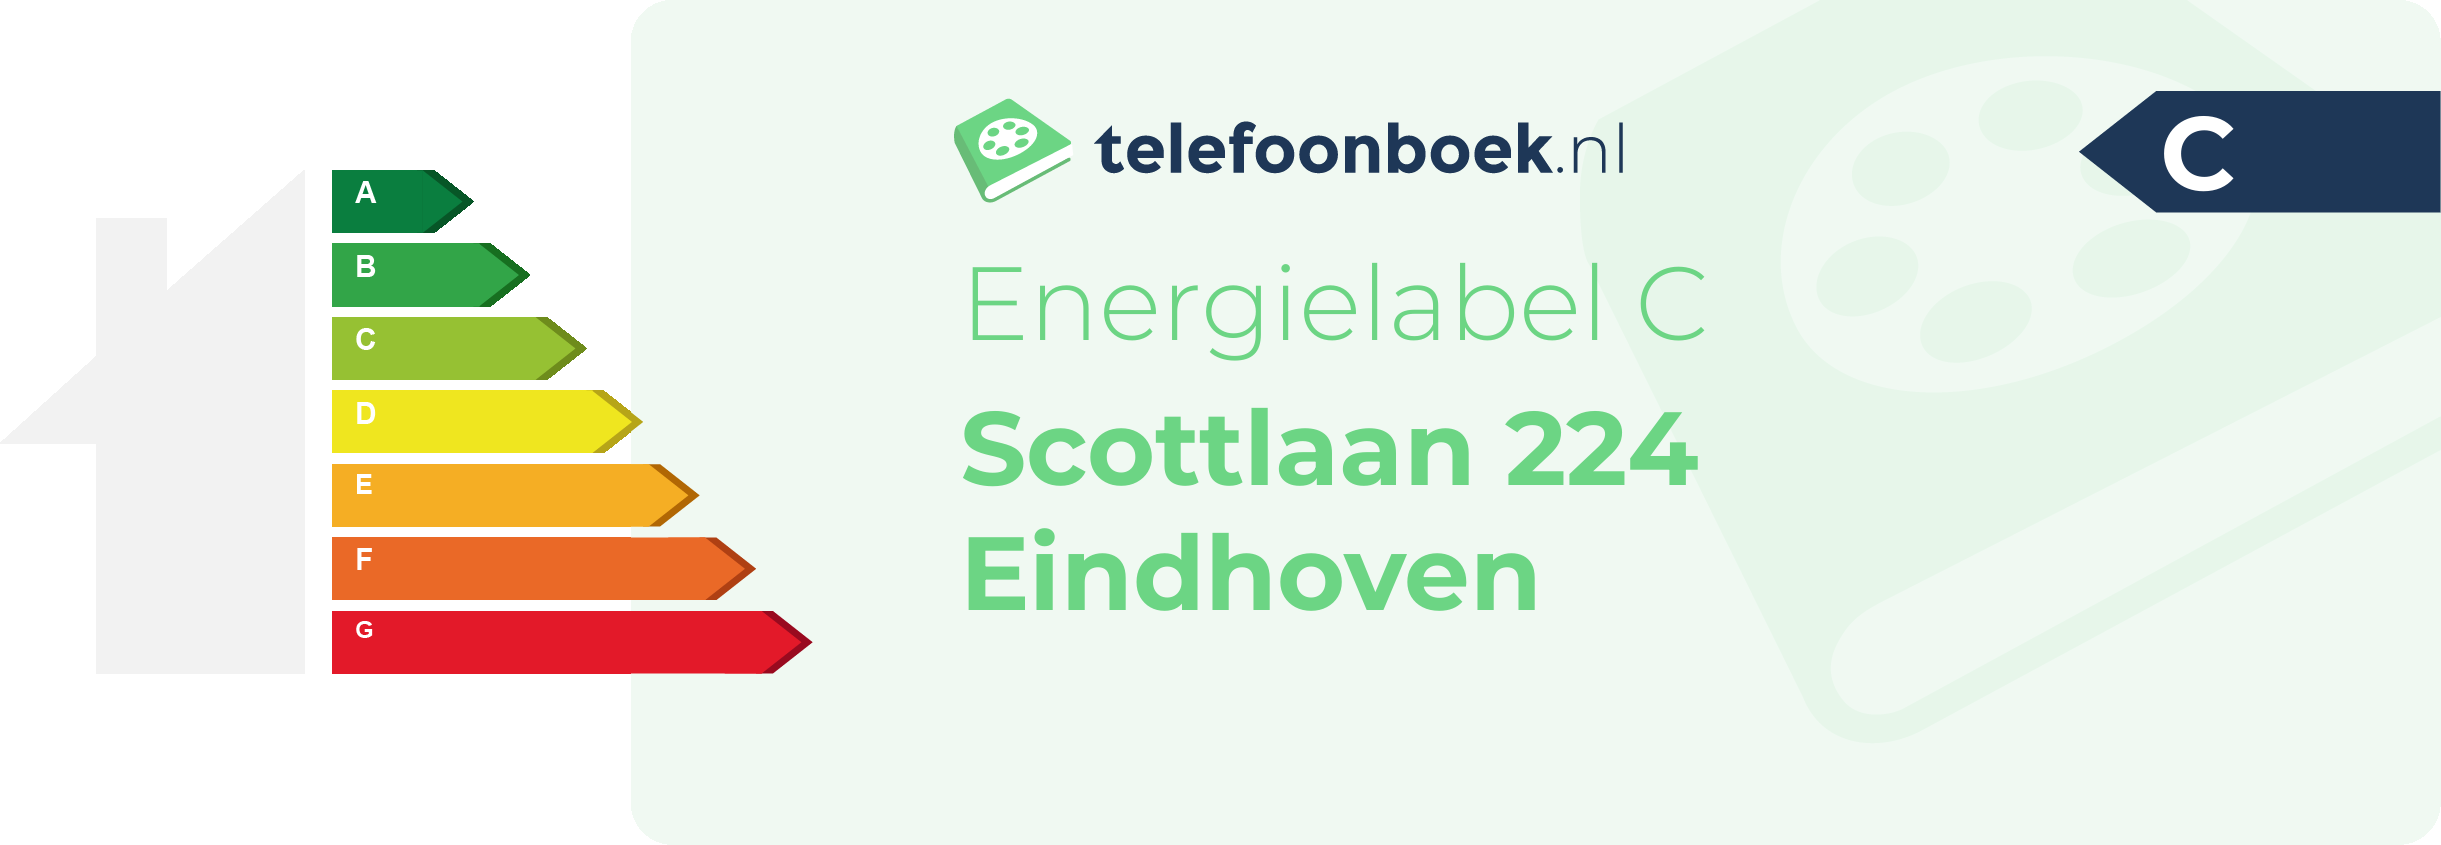 Energielabel Scottlaan 224 Eindhoven